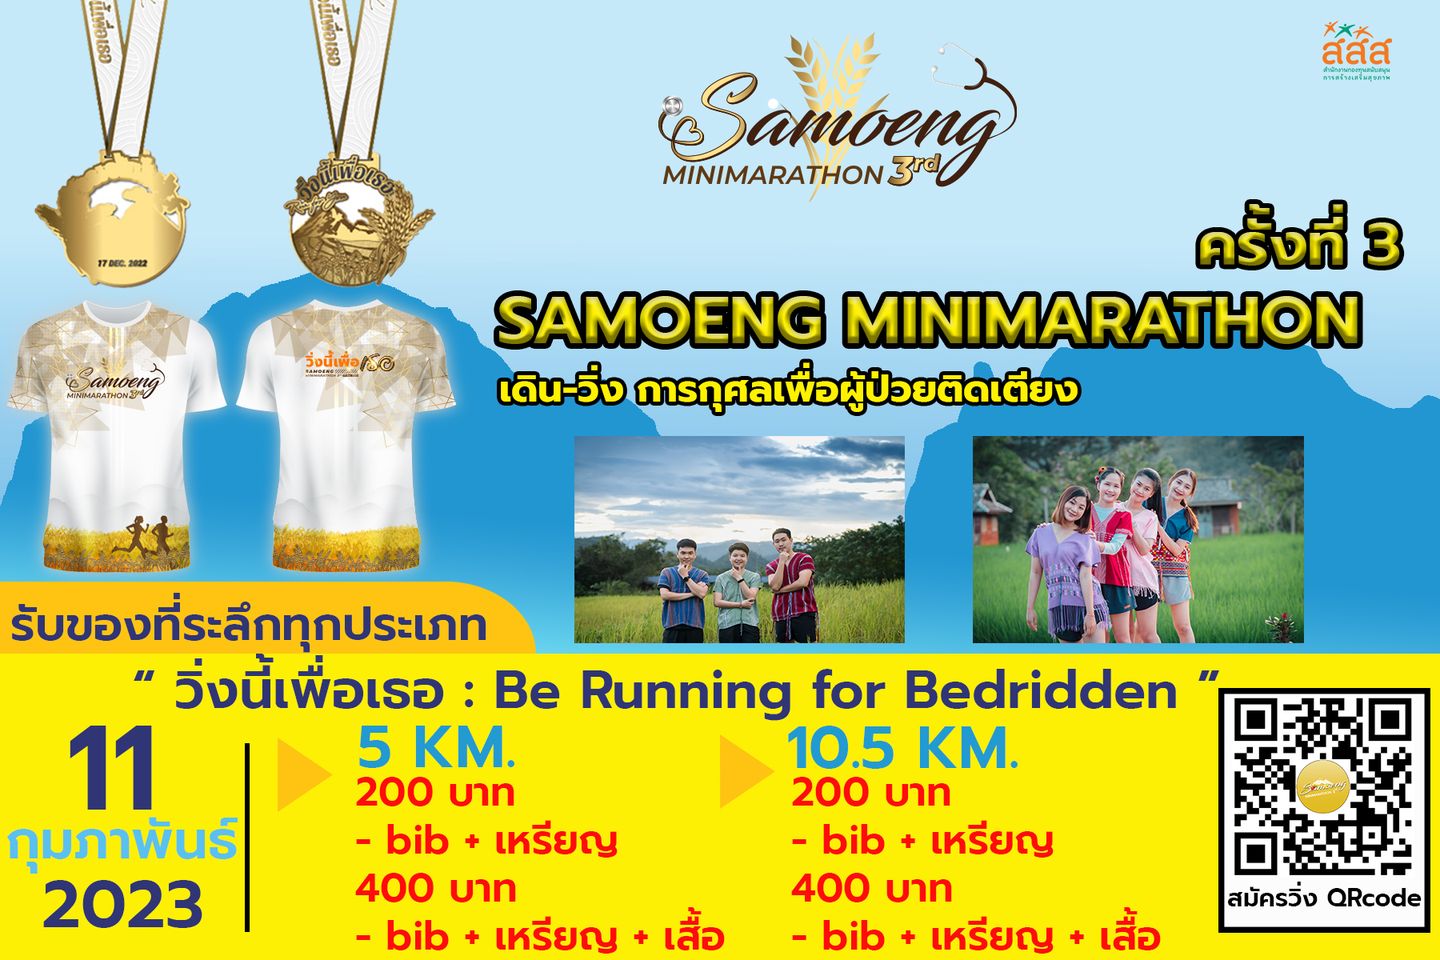 องค์การบริหารส่วนตำบลแม่สาบ ขอเชิญชวนพี่น้องประชาชนตำบลแม่สาบ ร่วมงานวิ่งสะเมิง ครั้งที่ 3 Samoeng Mini marathon 3rd 2022 ณ โรงพยาบาลสะเมิง จังหวัดเชียงใหม่ วันเสาร์ ที่ 11 กุมภาพันธ์ 2566